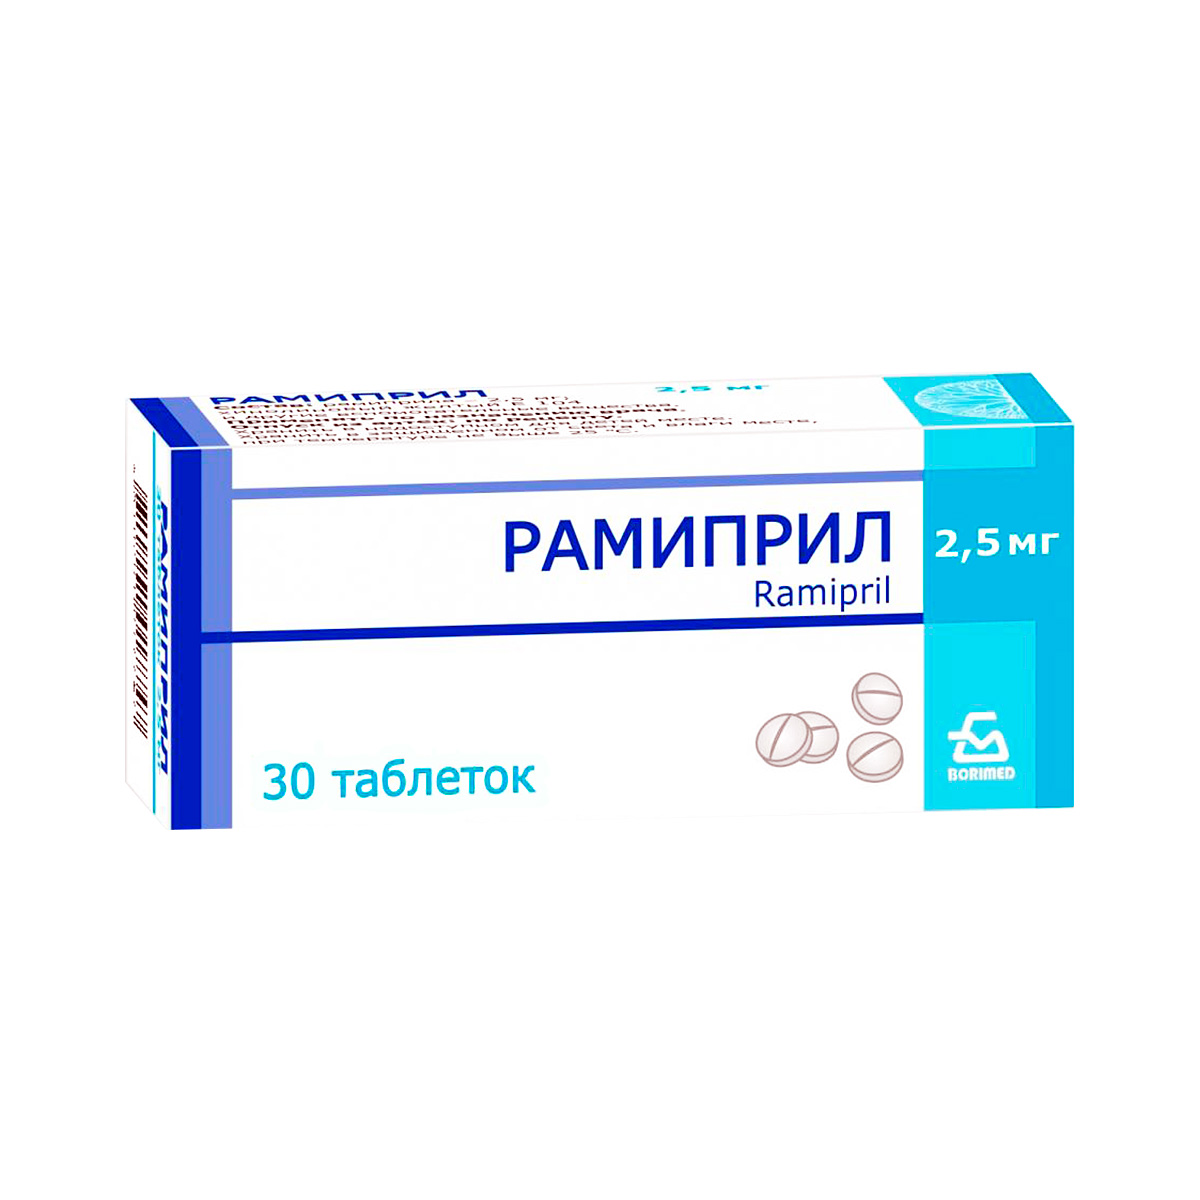 Рамиприл 2,5 мг таблетки 30 шт